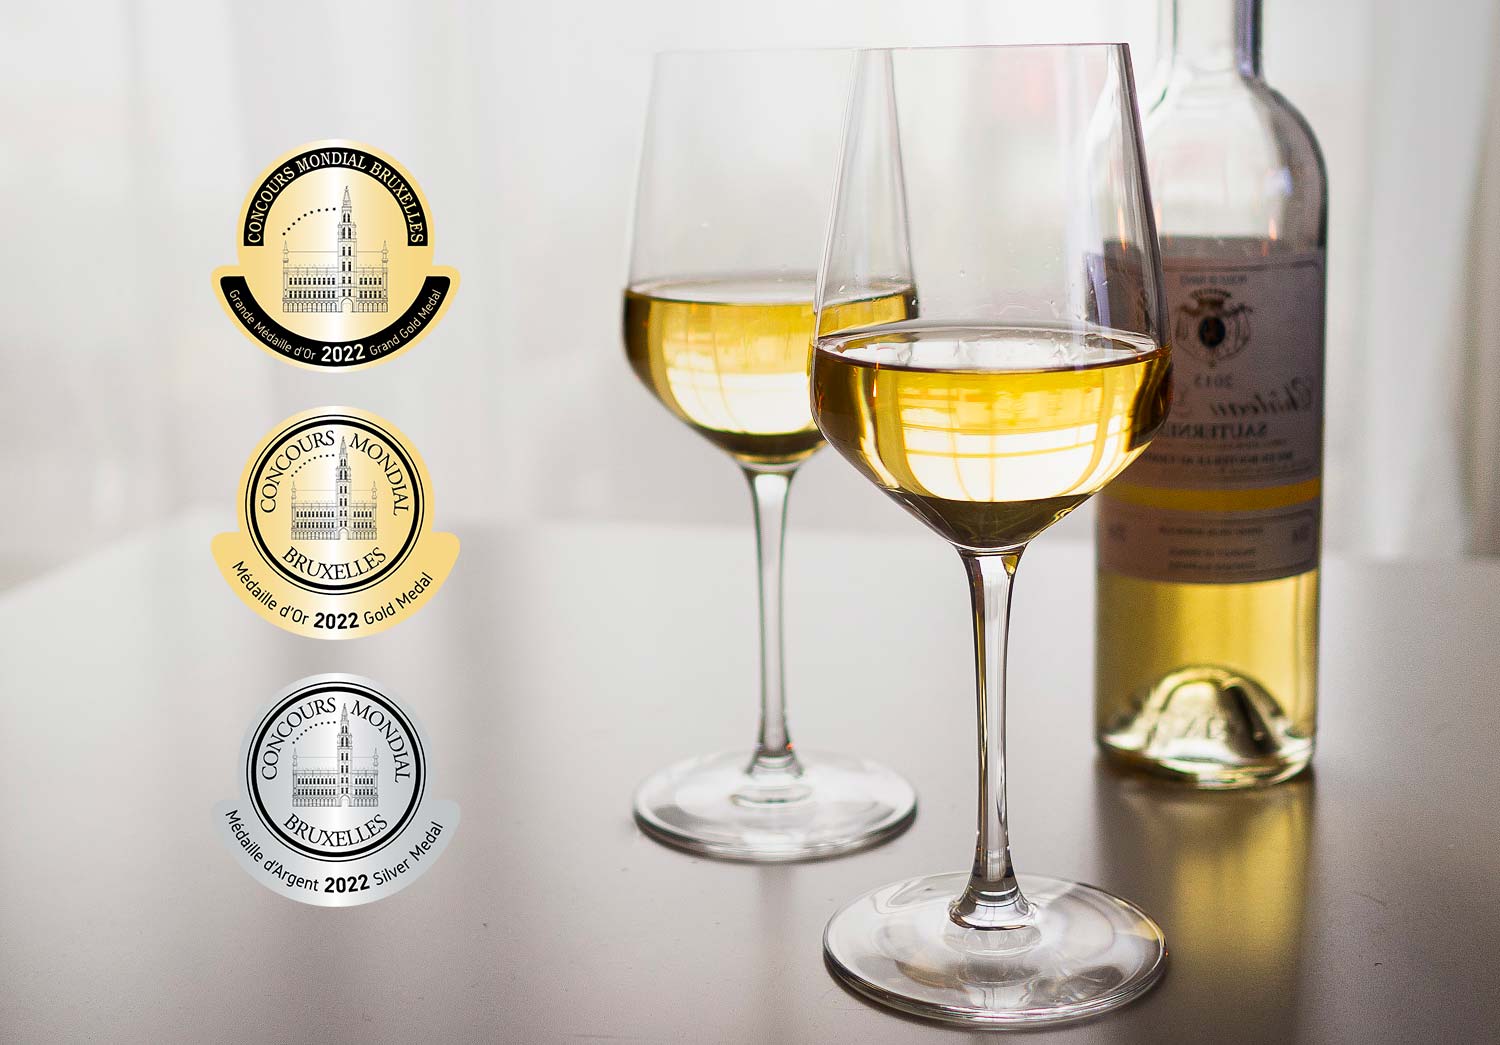 Cigales es la denominación de origen española más premiada en la Cata de Vinos Rosados del Concours Mondial de Bruxelles